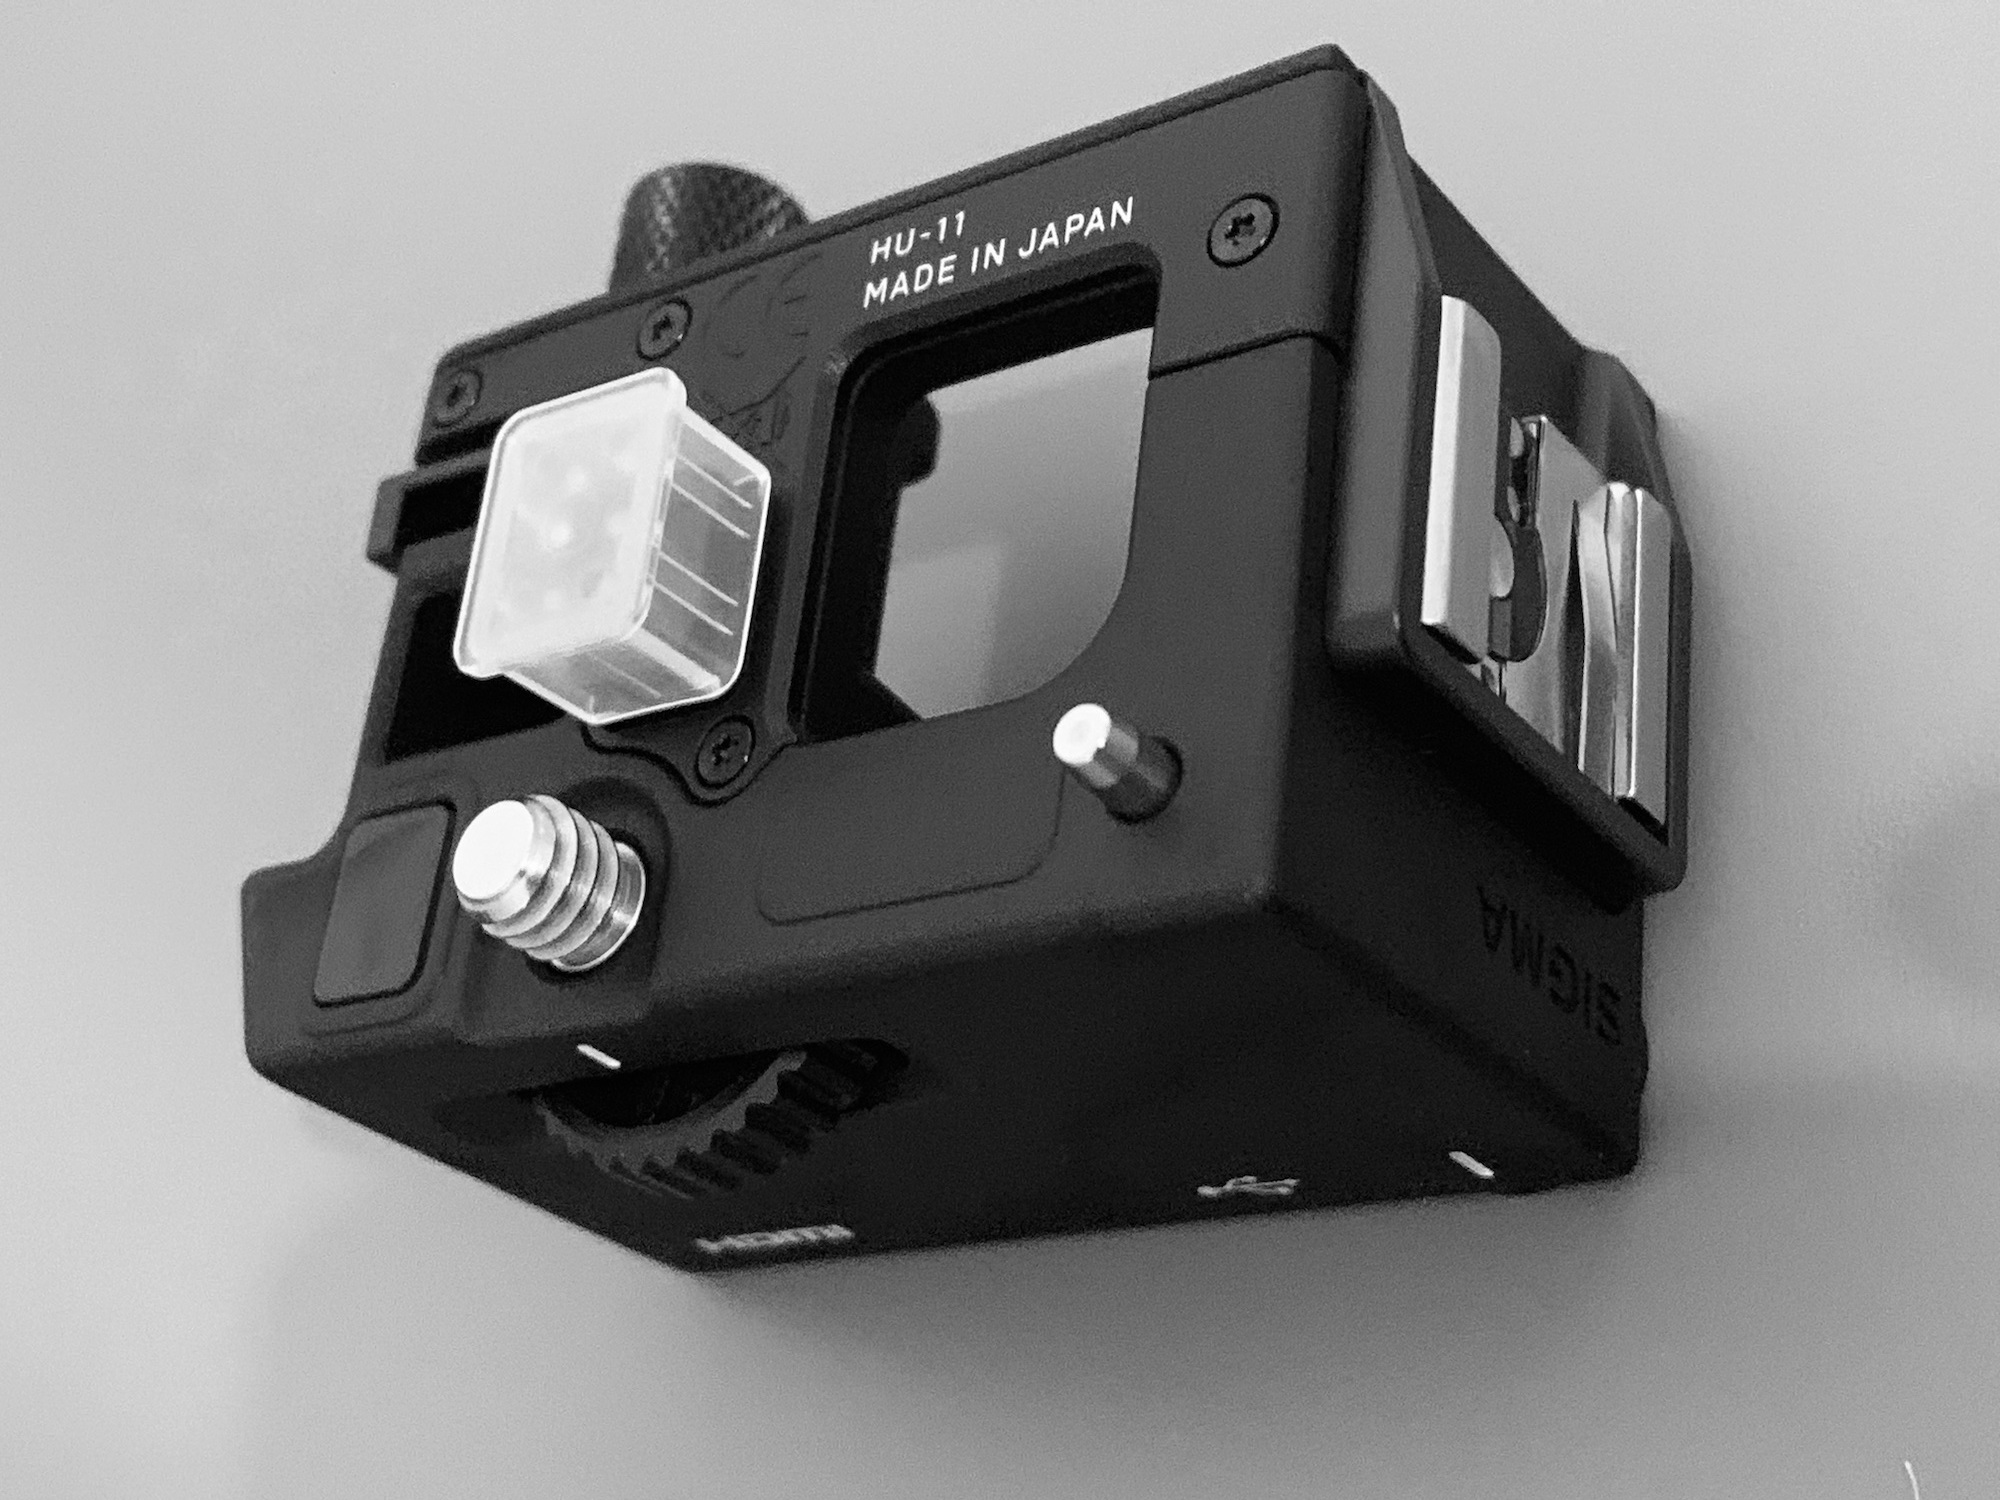 SIGMA FP L, griffe amovible pour utilisation de flash ou autres accessoires.